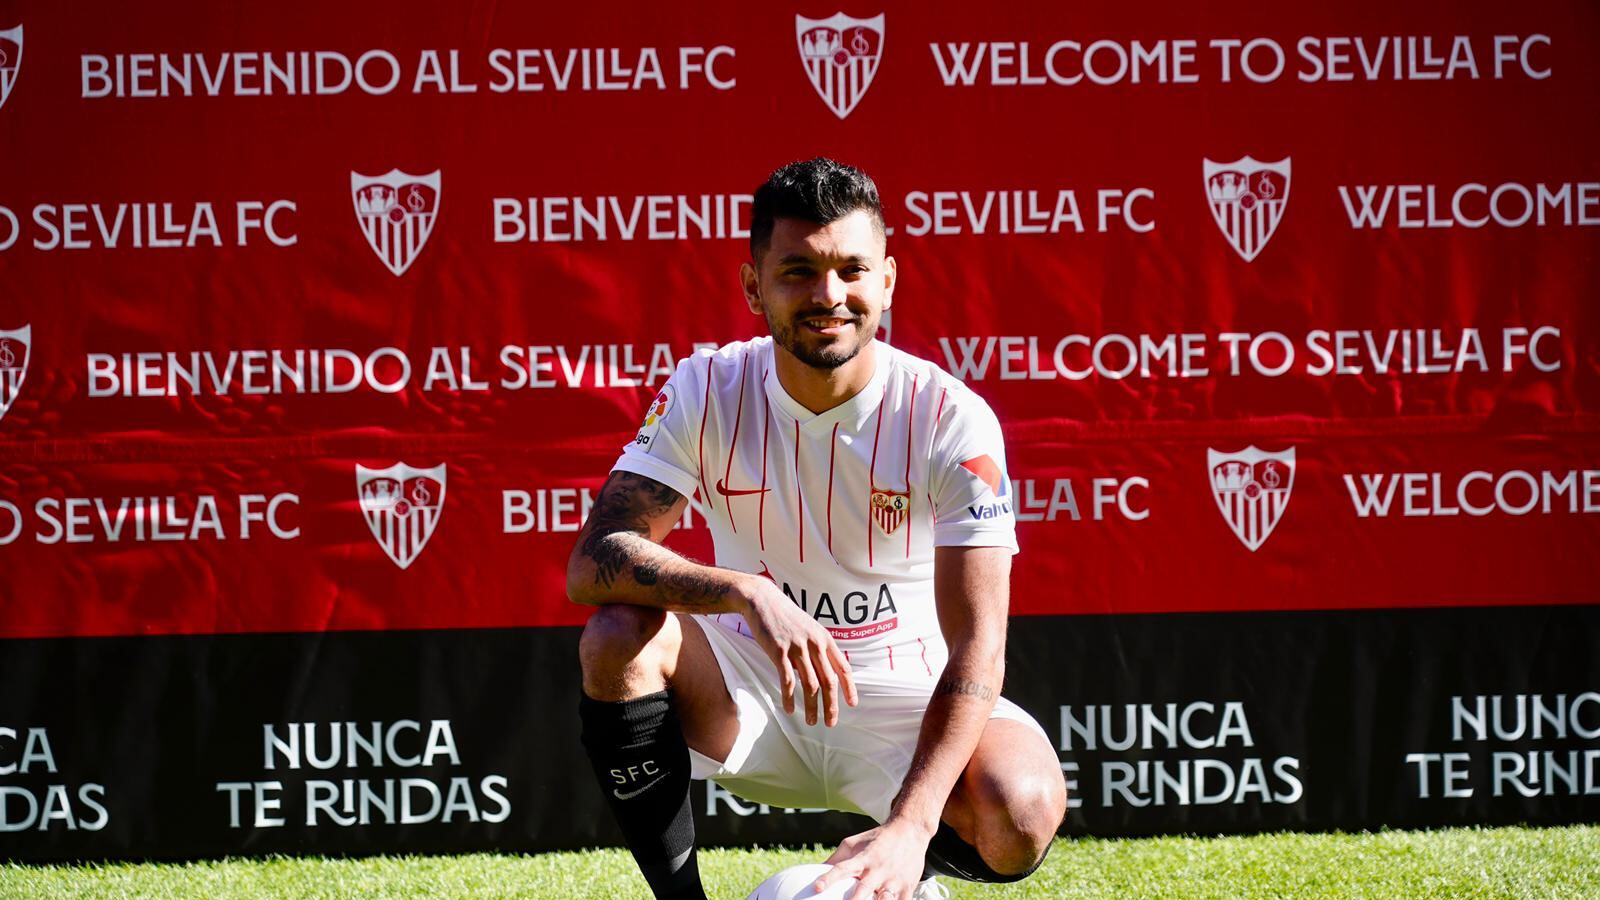 Jugó con Messi, pero Tecatito llega como crack y lo manda a la banca en Sevilla